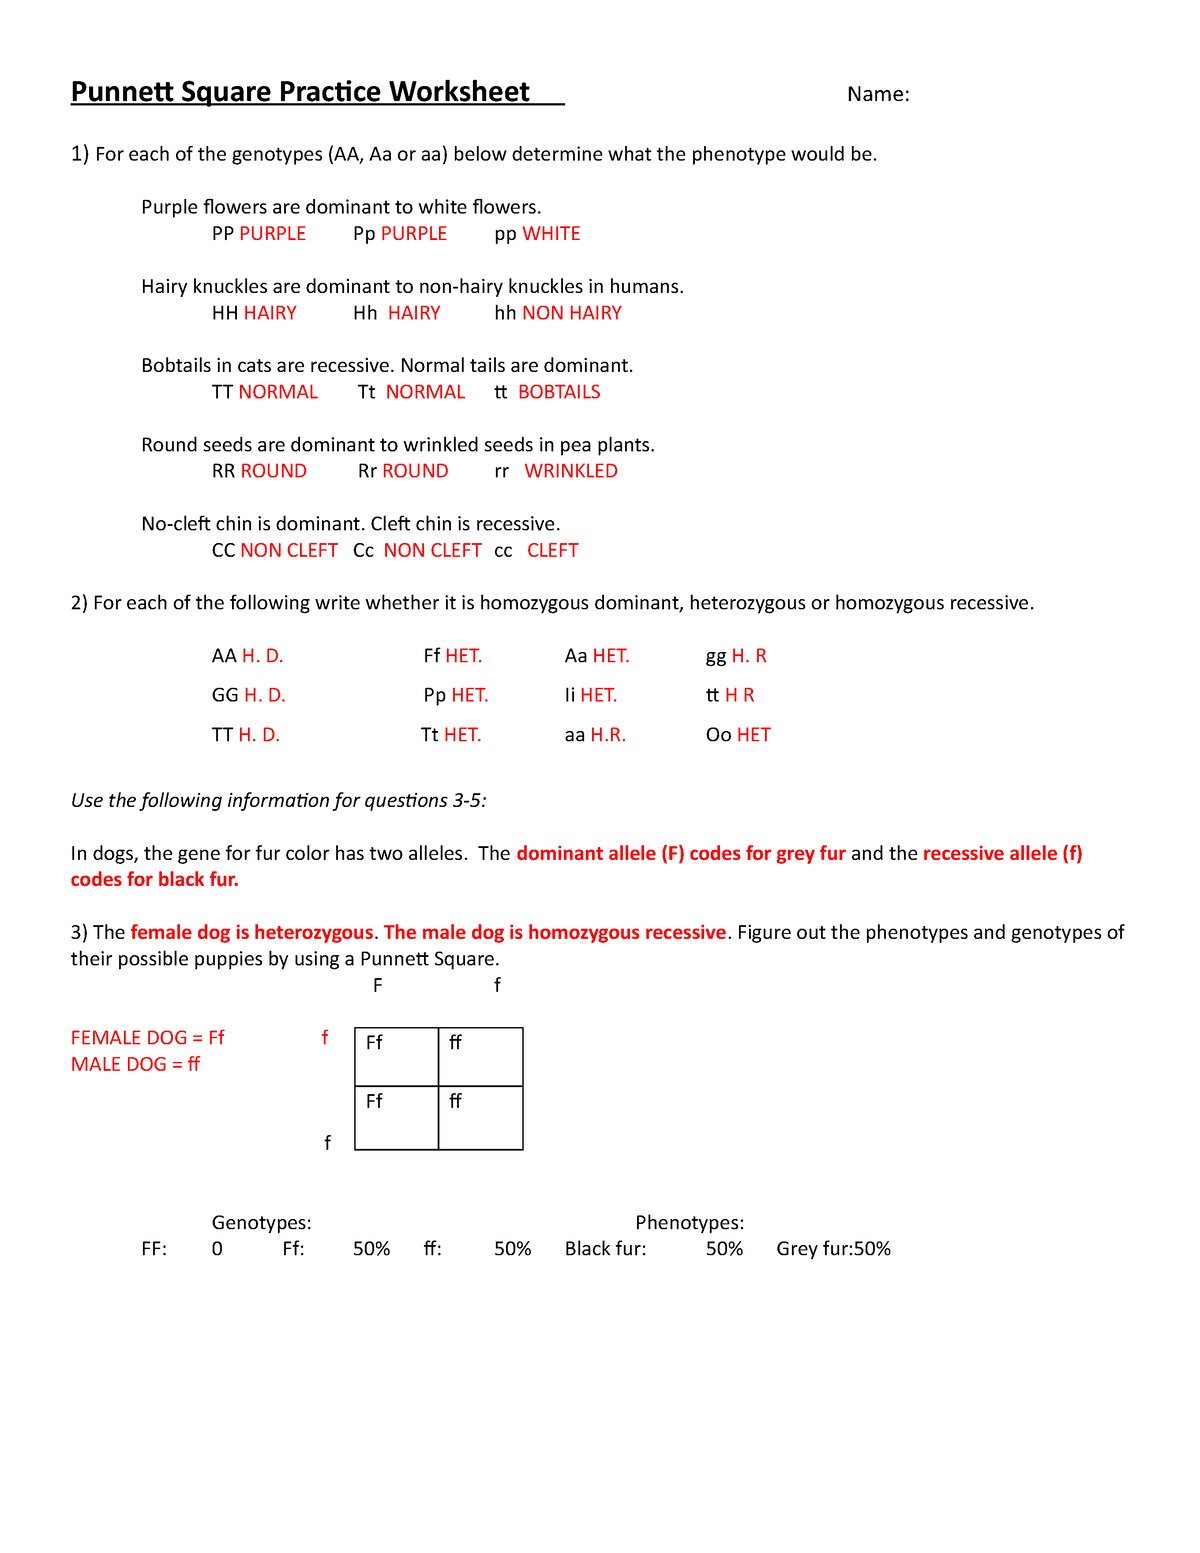 punnett-square-practice-worksheet-name-key-171e0l0-2-punnett-square